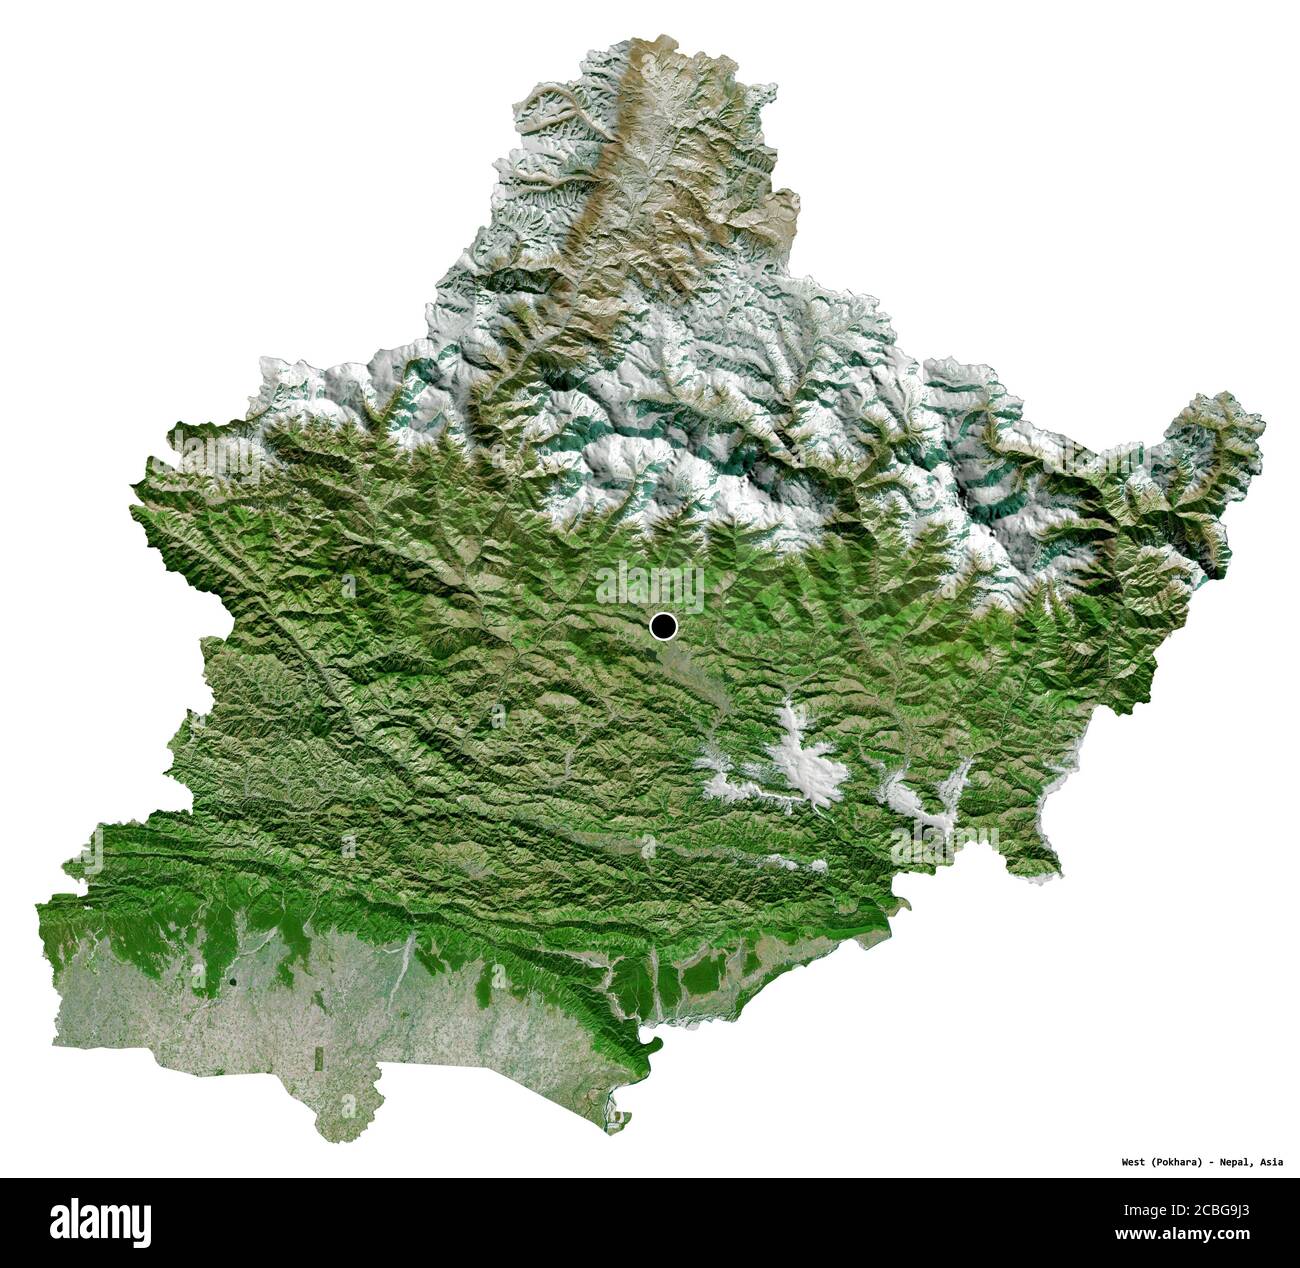 Forme de l'Ouest, région de développement du Népal, avec sa capitale isolée sur fond blanc. Imagerie satellite. Rendu 3D Banque D'Images